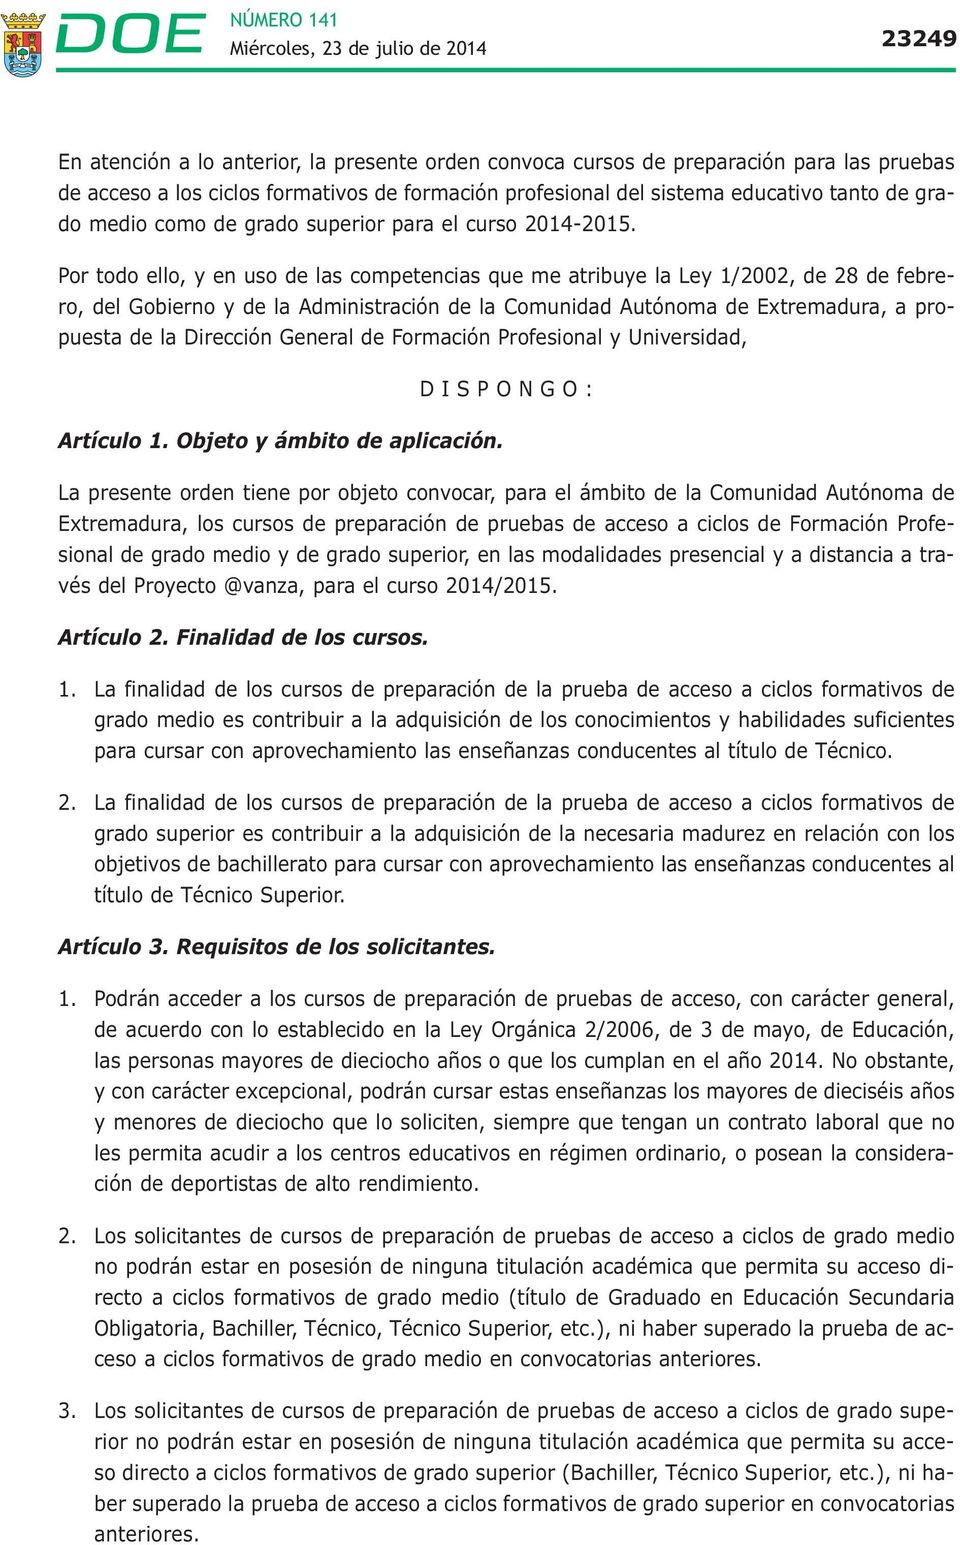 Por todo ello, y en uso de las competencias que me atribuye la Ley 1/2002, de 28 de febrero, del Gobierno y de la Administración de la Comunidad Autónoma de Extremadura, a propuesta de la Dirección